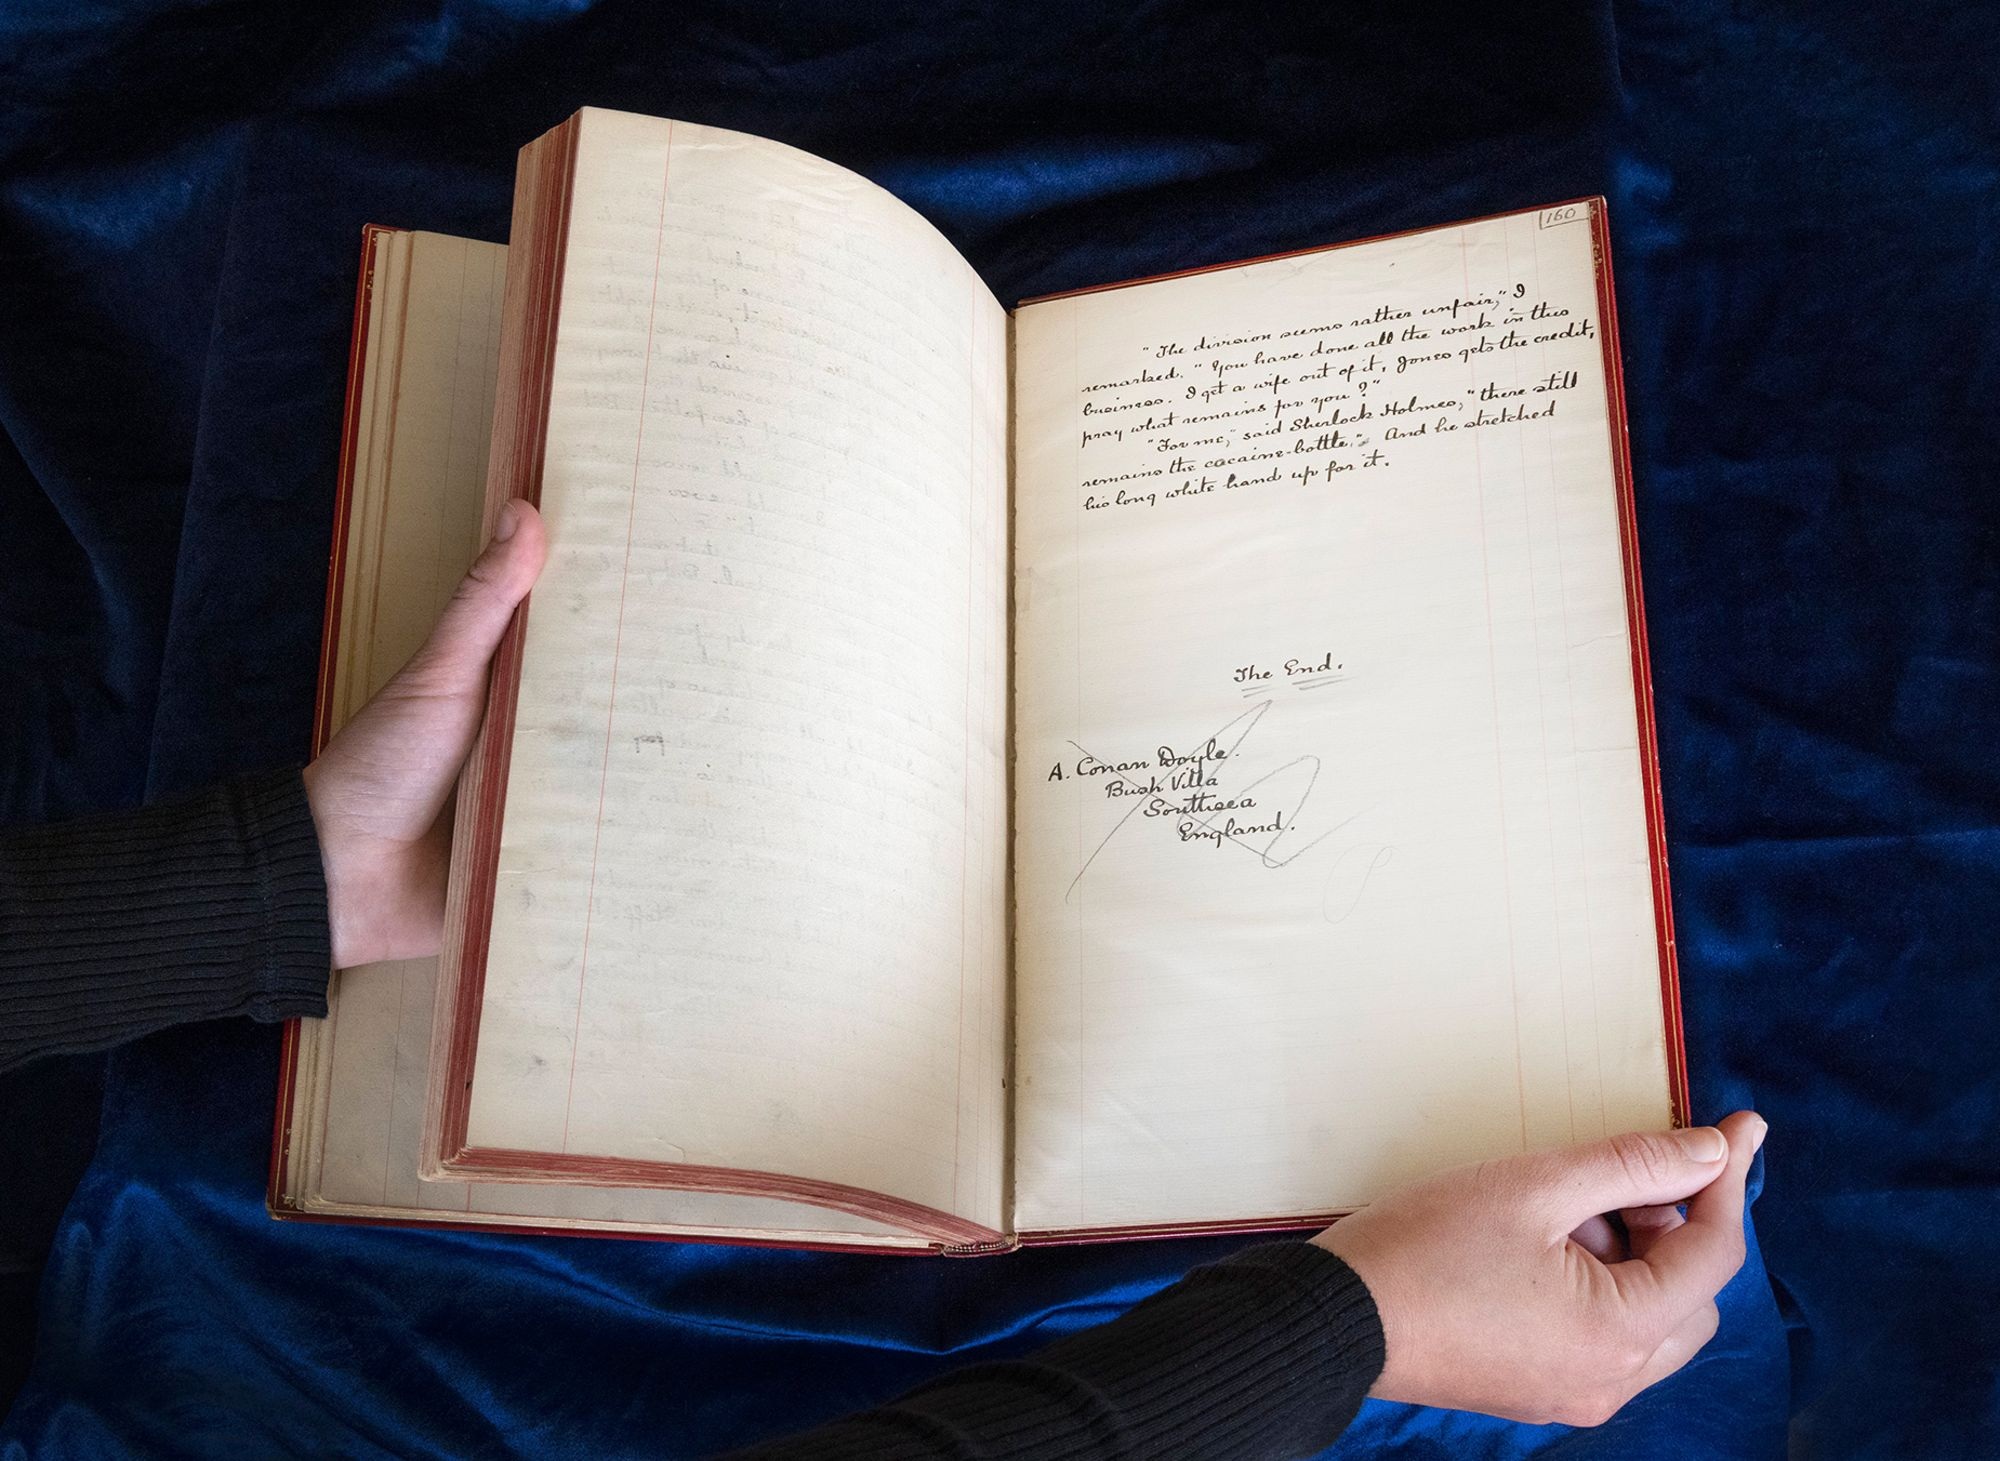 View - Bản thảo gốc của Sherlock Holmes được bán đấu giá gần 30 tỷ đồng | Báo Dân trí